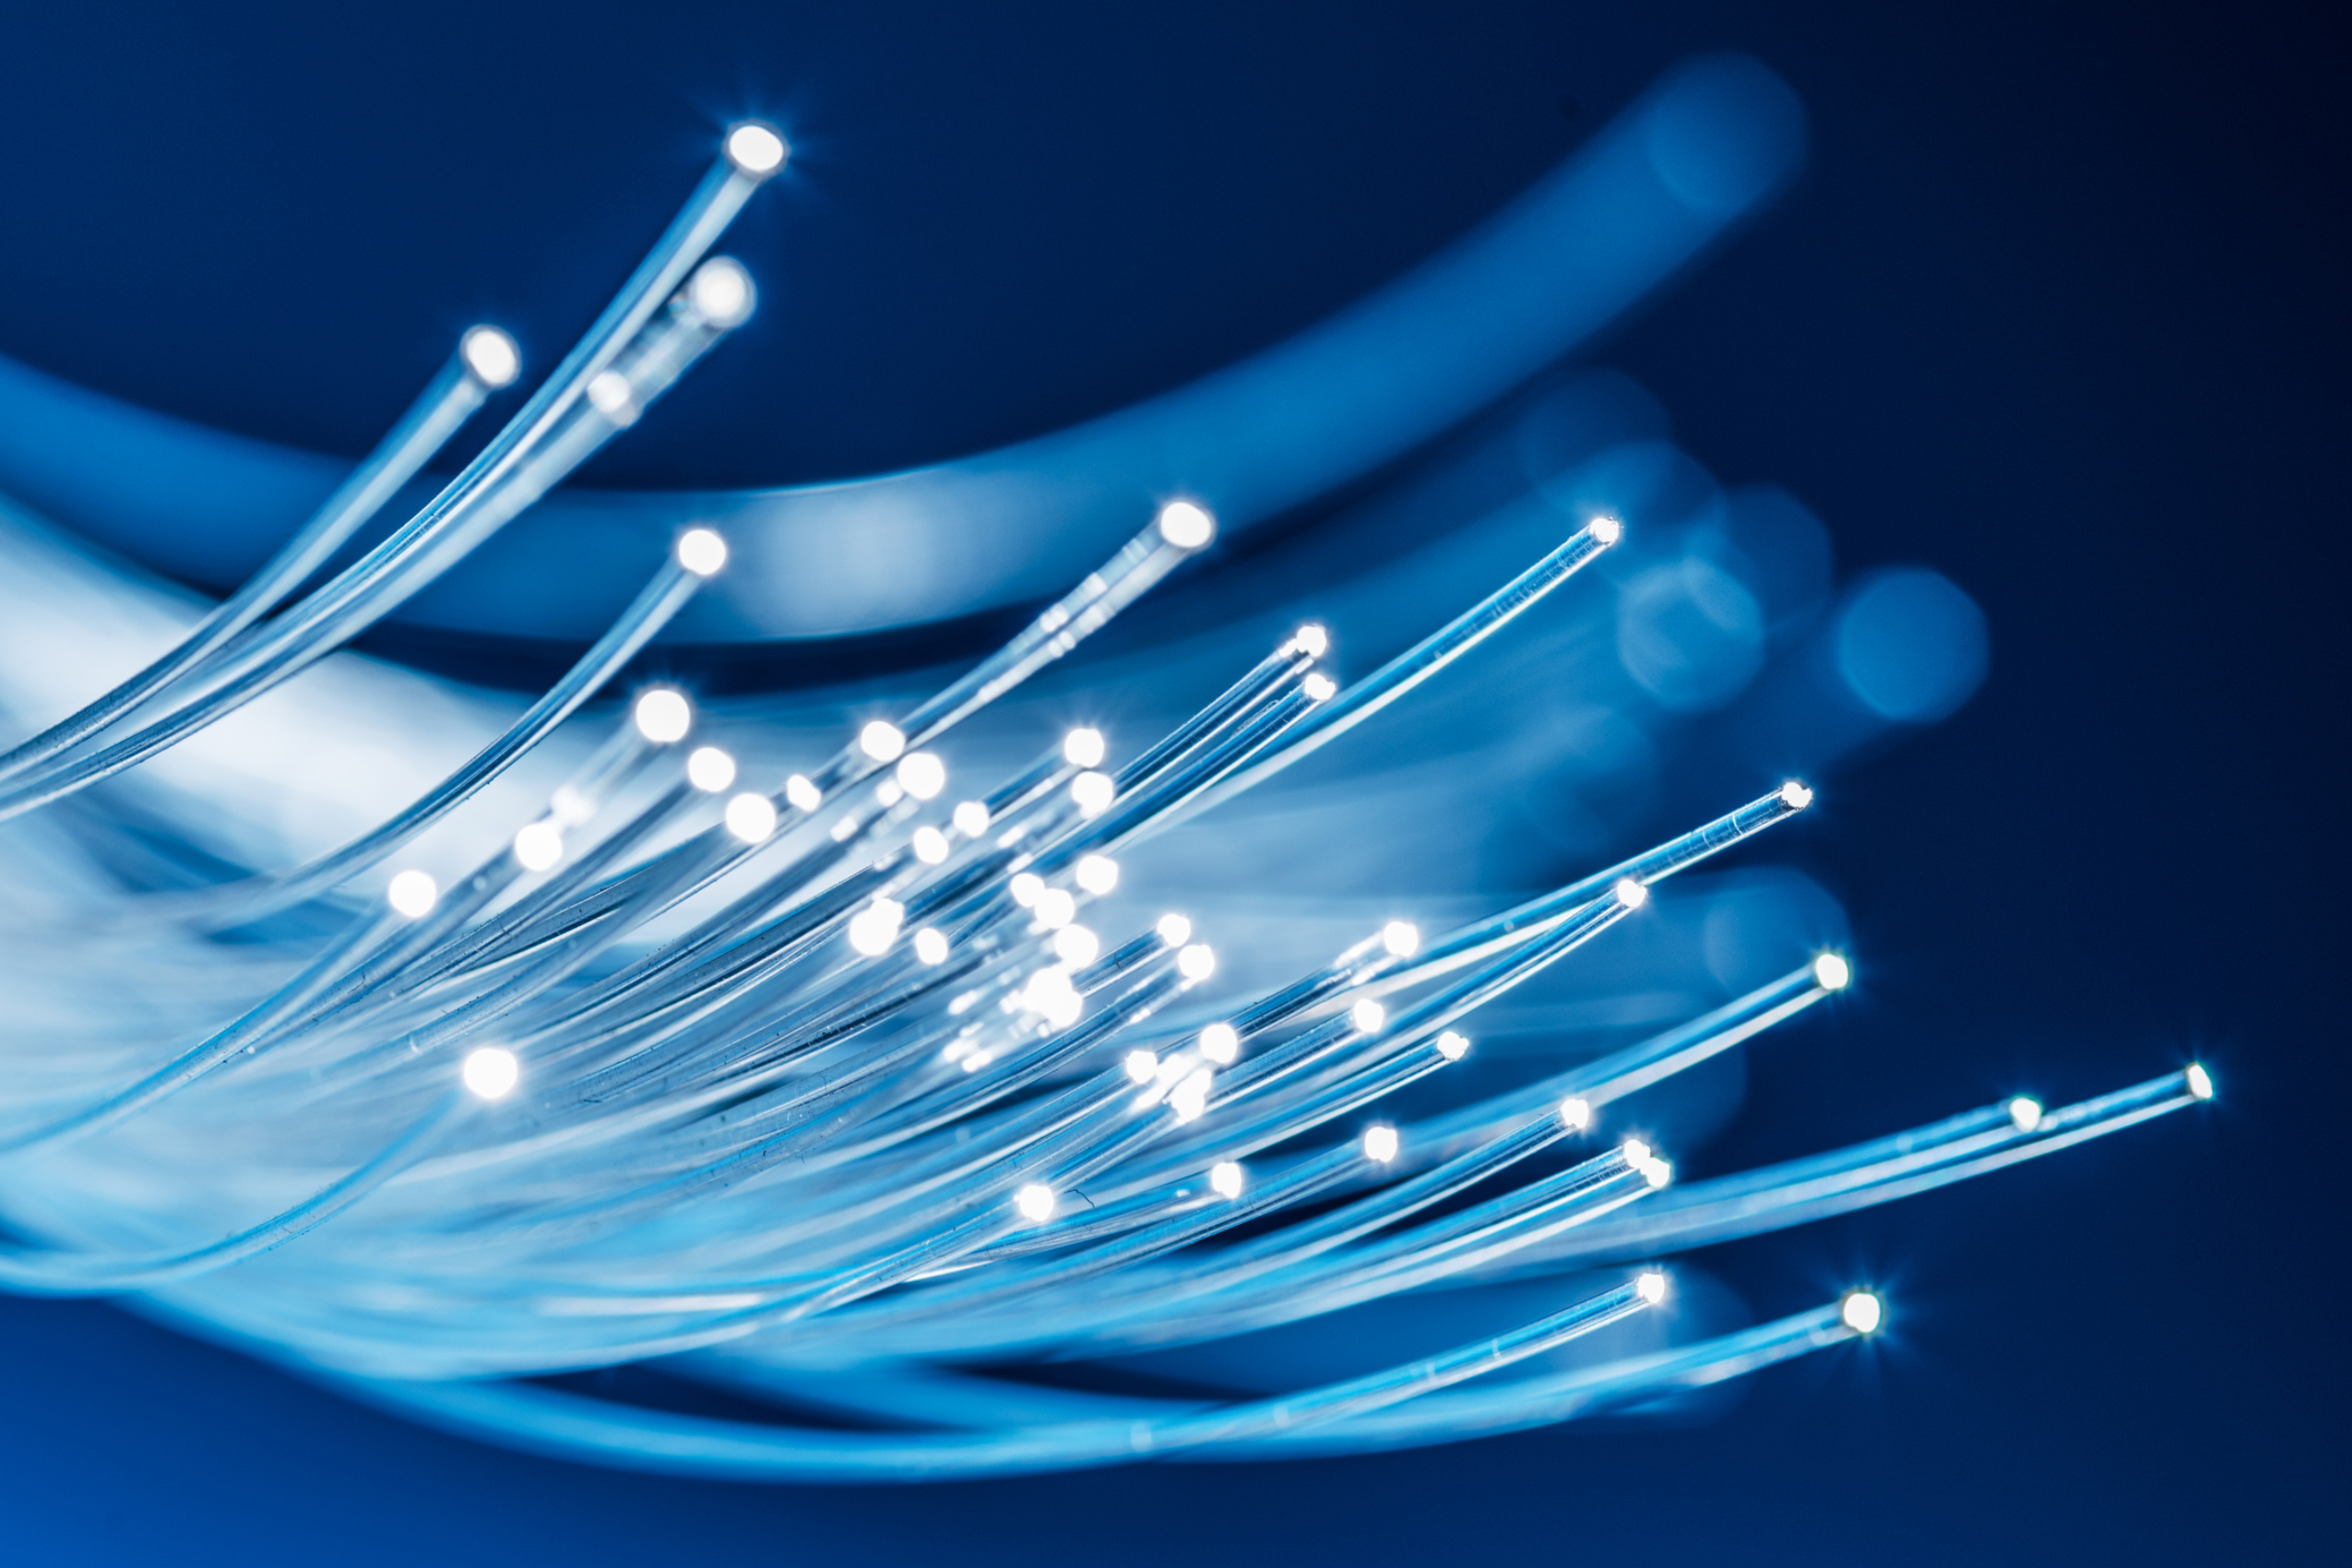 fiber optic cabling components